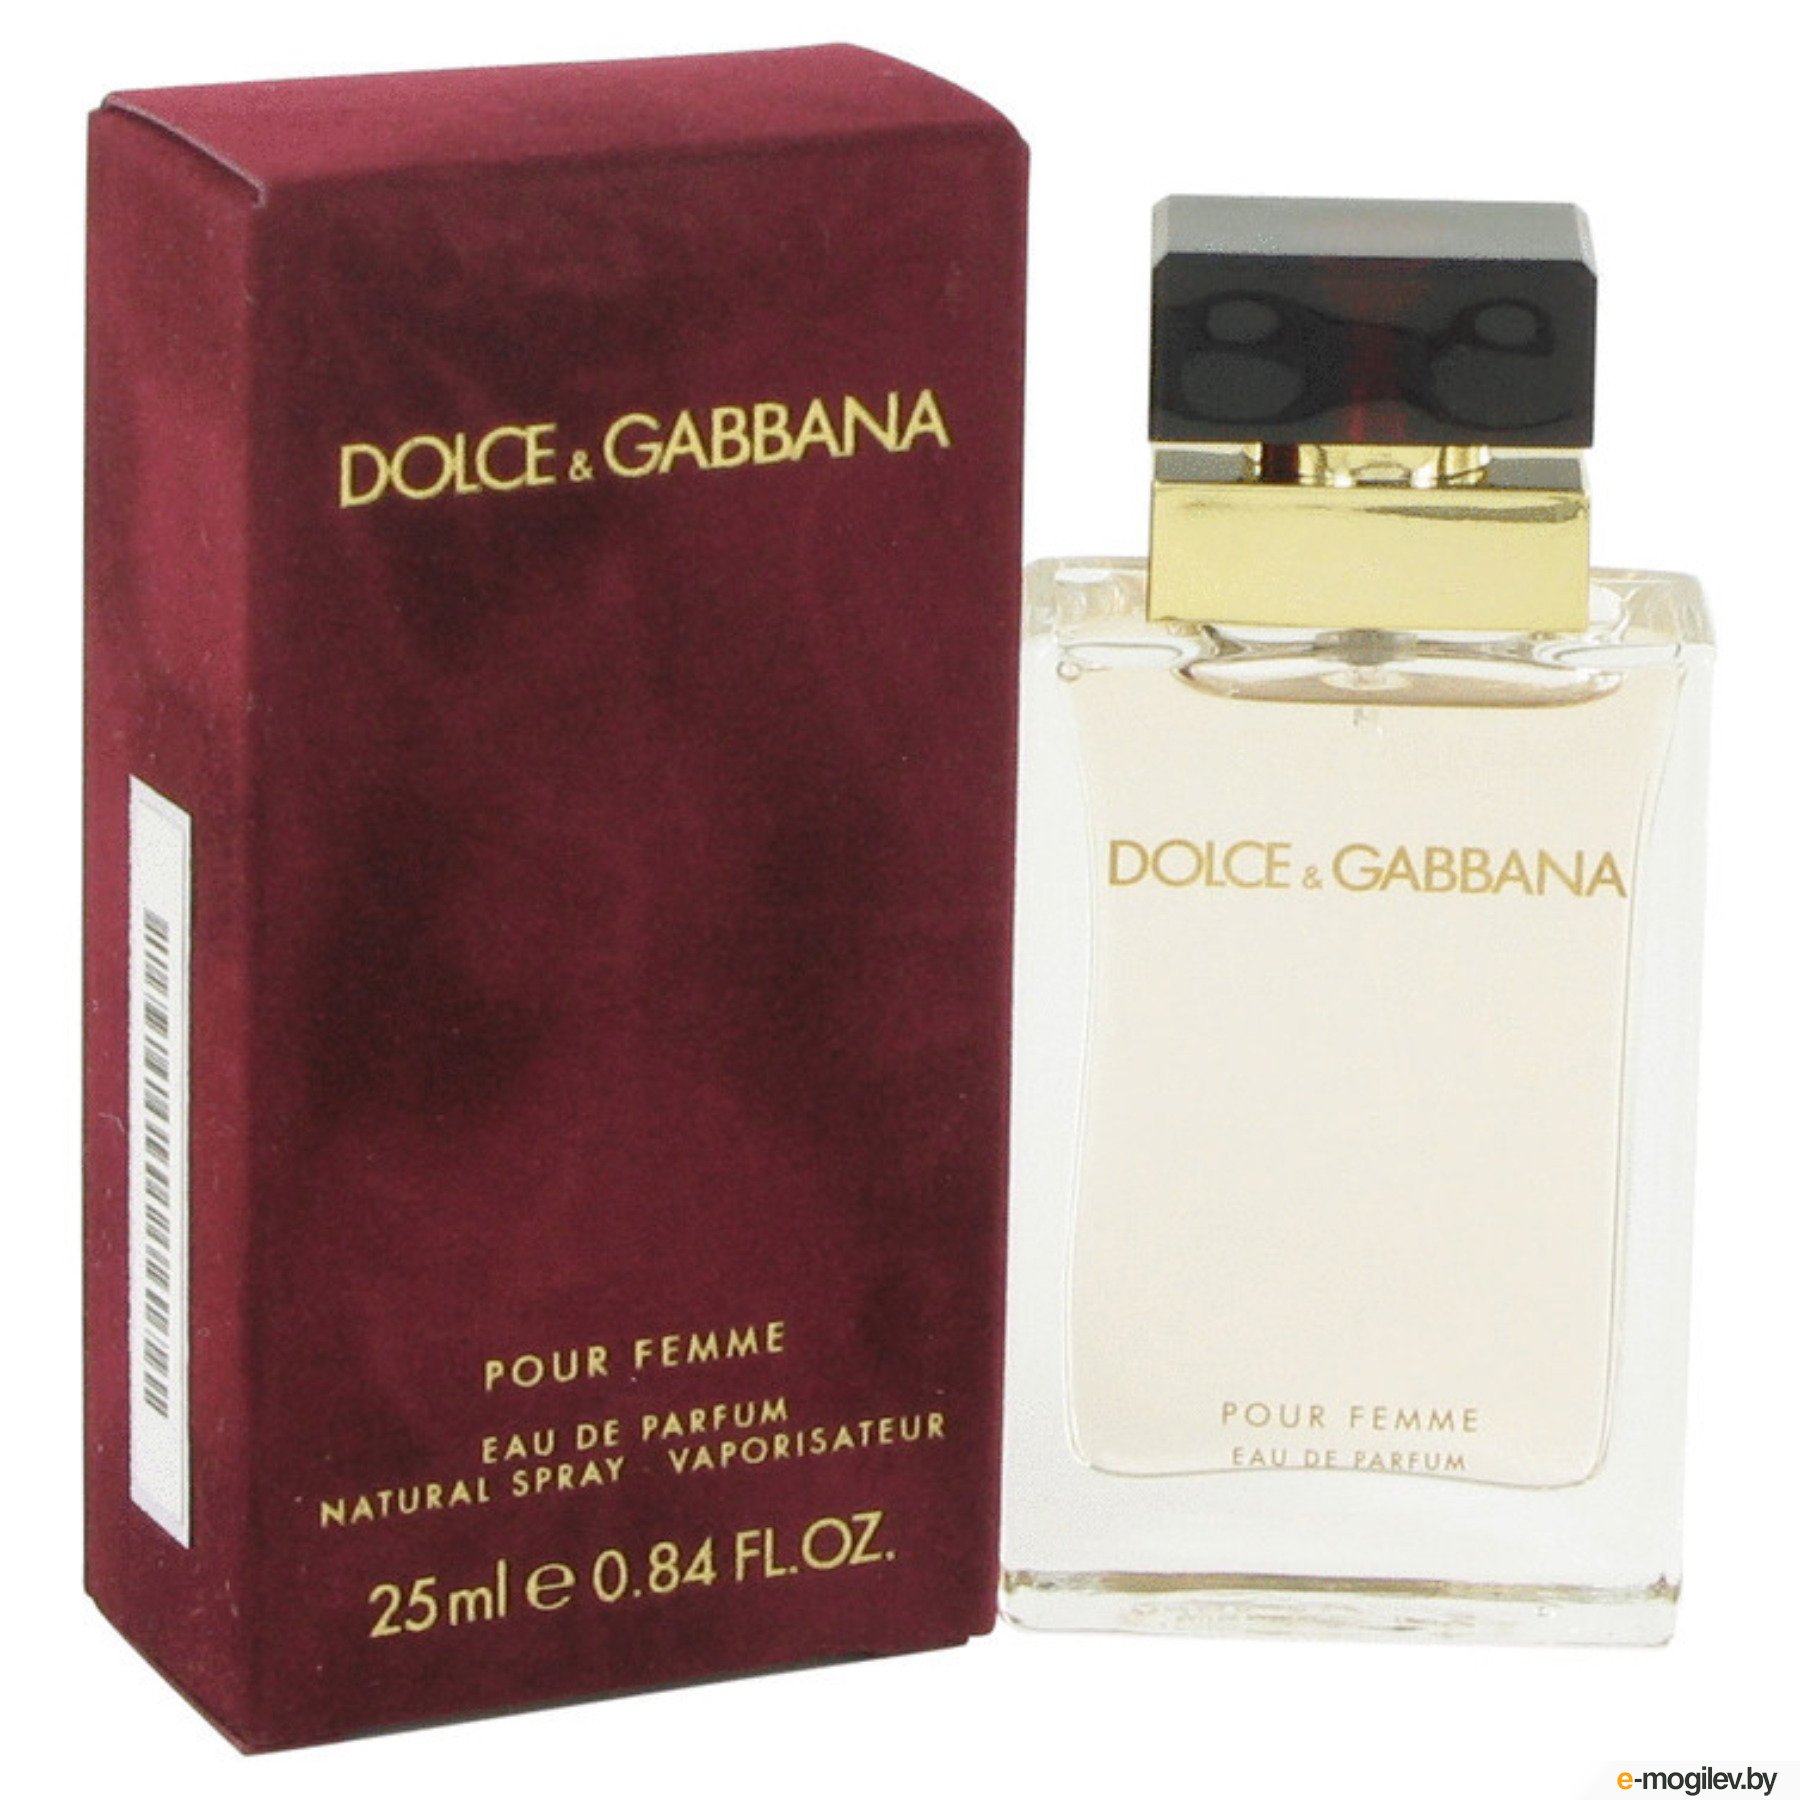 D g dolce gabbana. Dolce Gabbana pour femme 25ml. Dolce Gabbana pour femme 25 мл. Dolce & Gabbana pour femme 100 мл. Dolce & Gabbana by Dolce & Gabbana Eau de Parfum Spray 100ml.